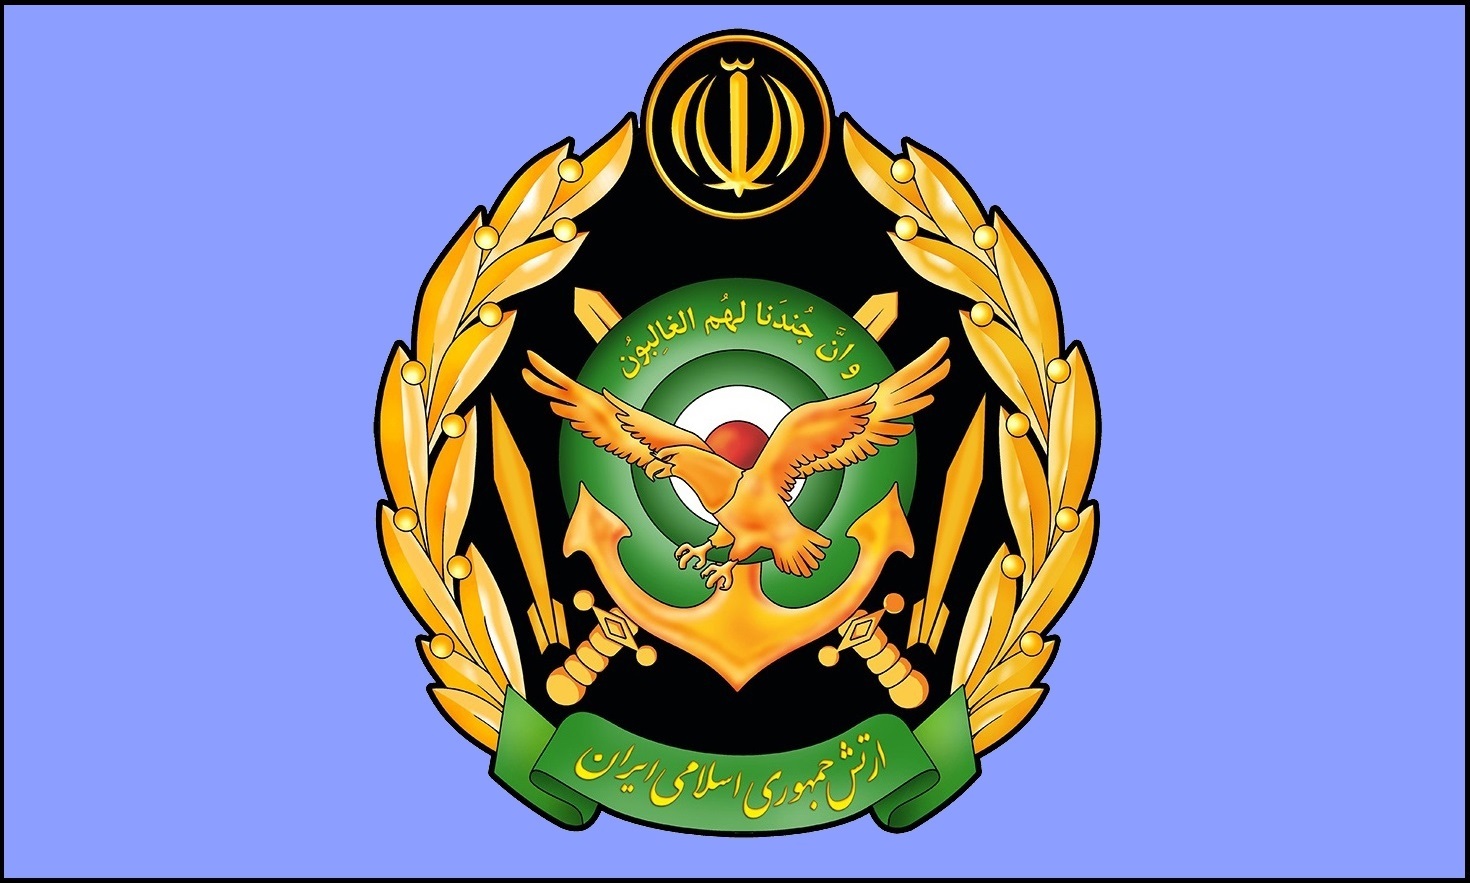 بیانیه ارتش جمهوری اسلامی ایران به مناسبت سالروز پیروزی انقلاب اسلامی ایران